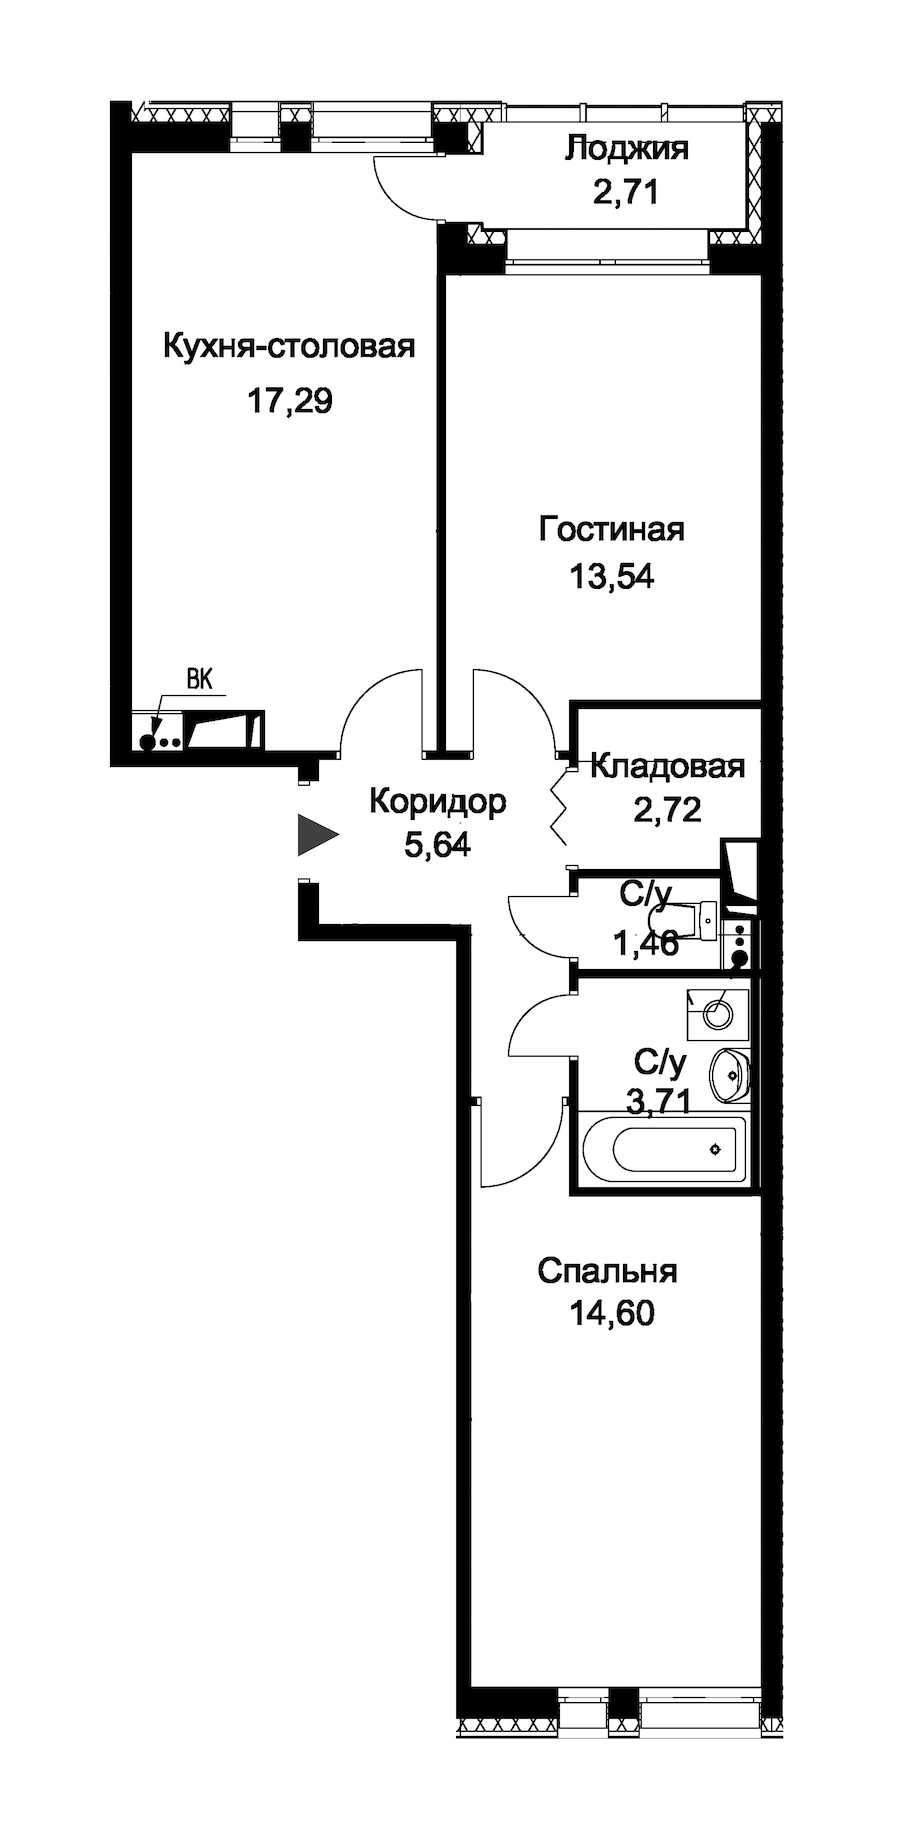 Двухкомнатная квартира в : площадь 60.32 м2 , этаж: 1 – купить в Санкт-Петербурге